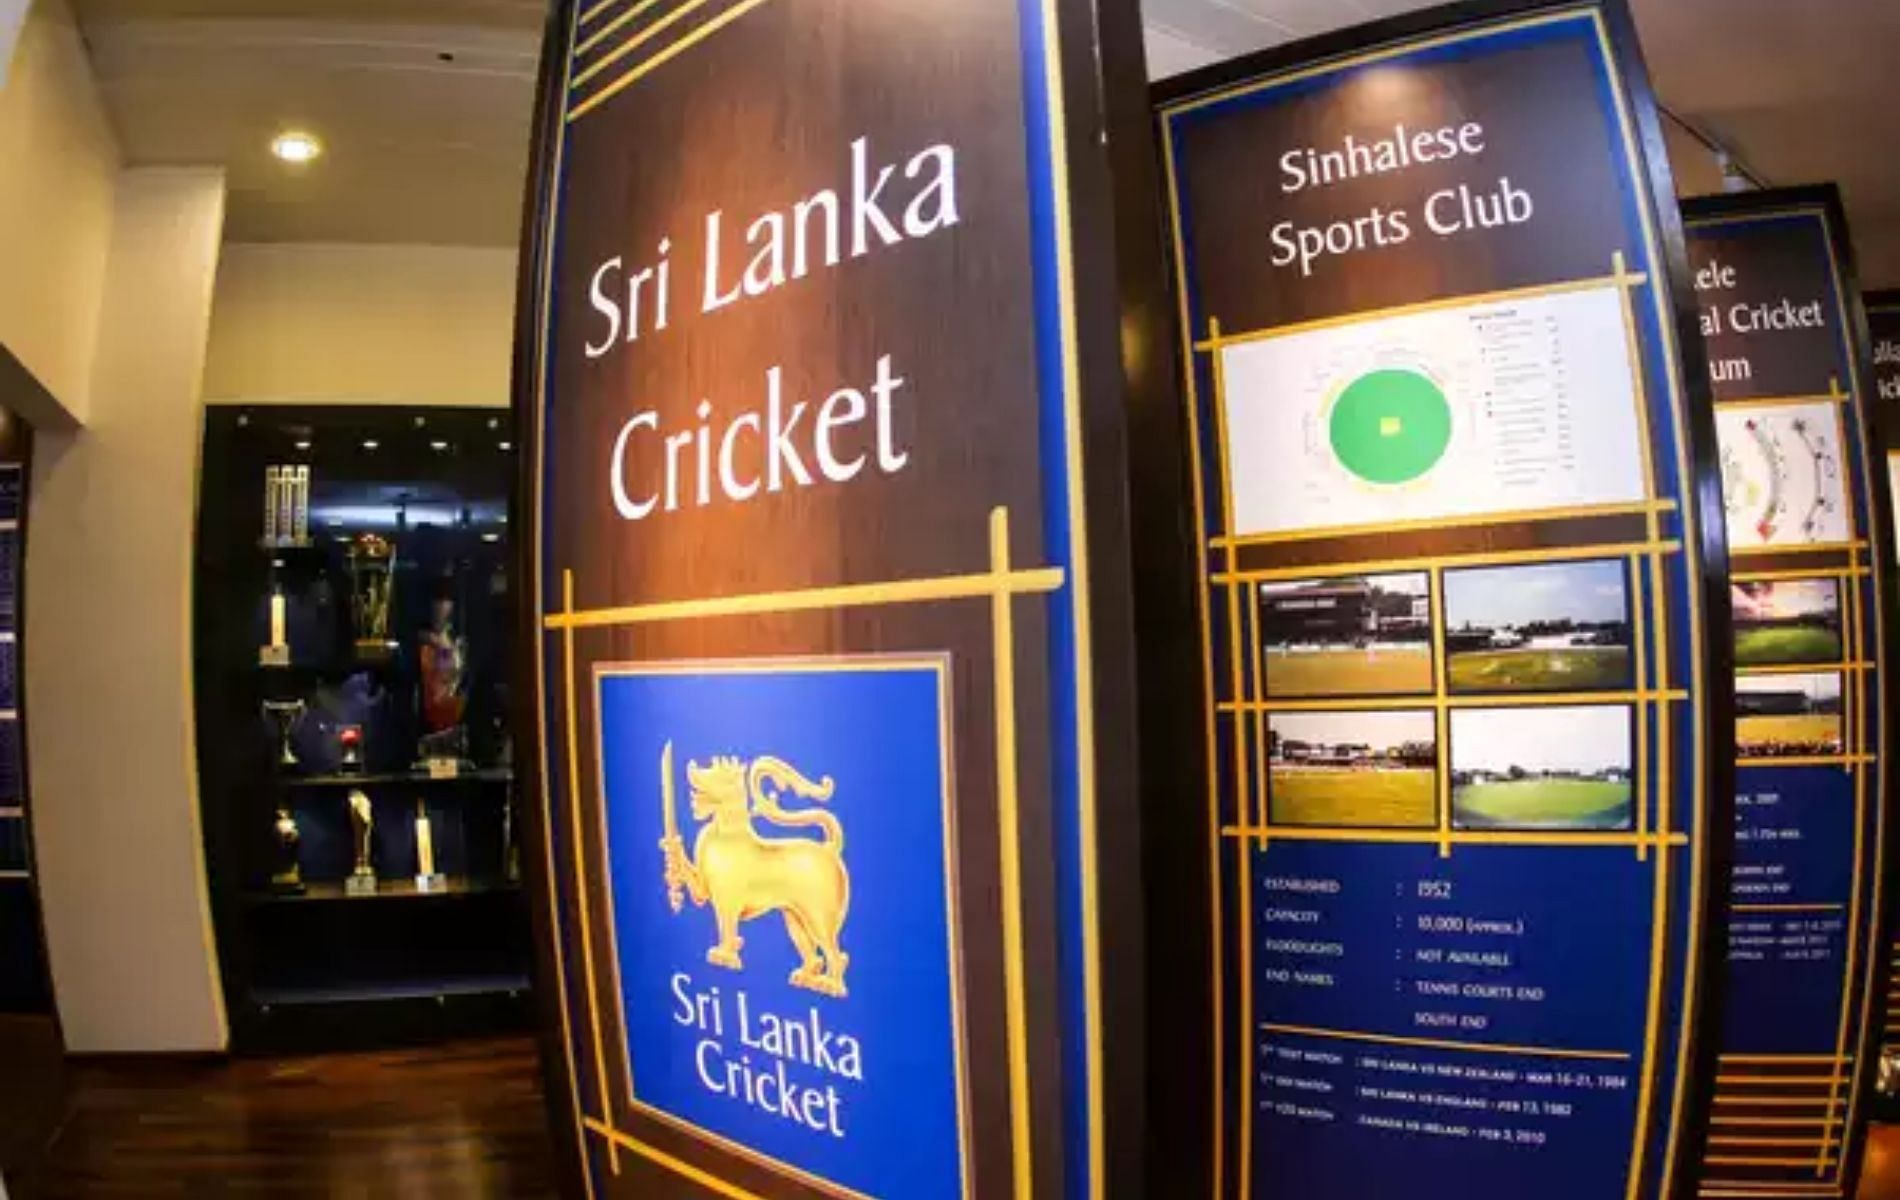 Photo Courtesy: Sri Lanka Cricket